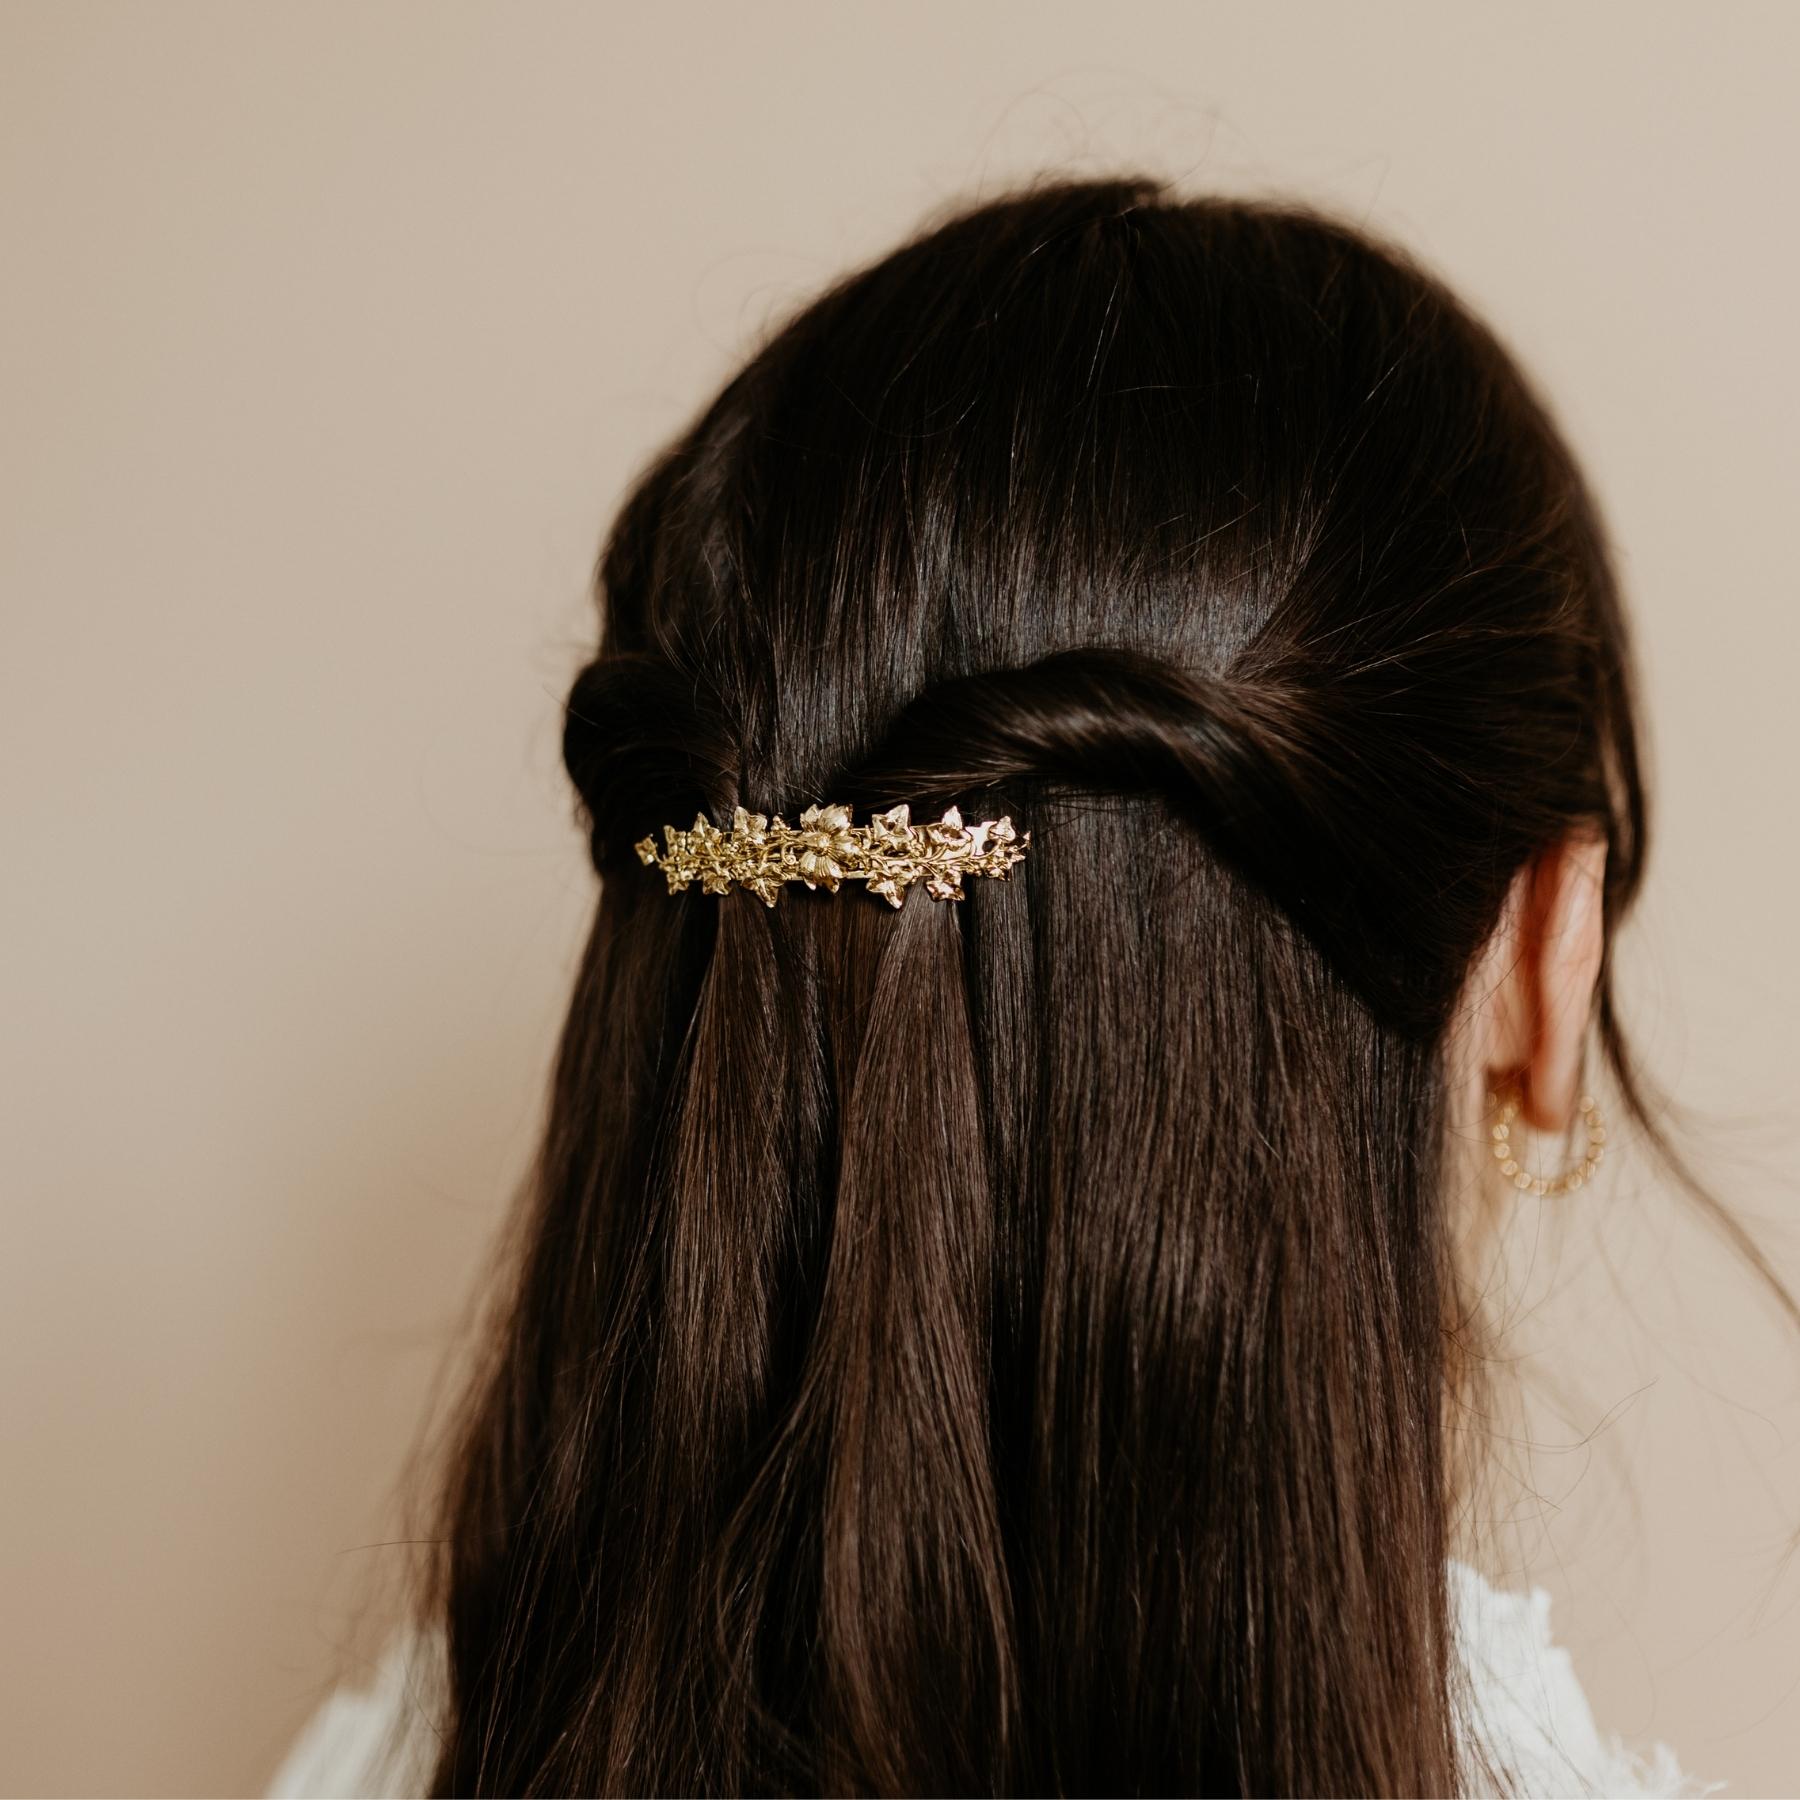 Petite barrette cheveux femme dorée fleurs coiffure mariage bijou chic